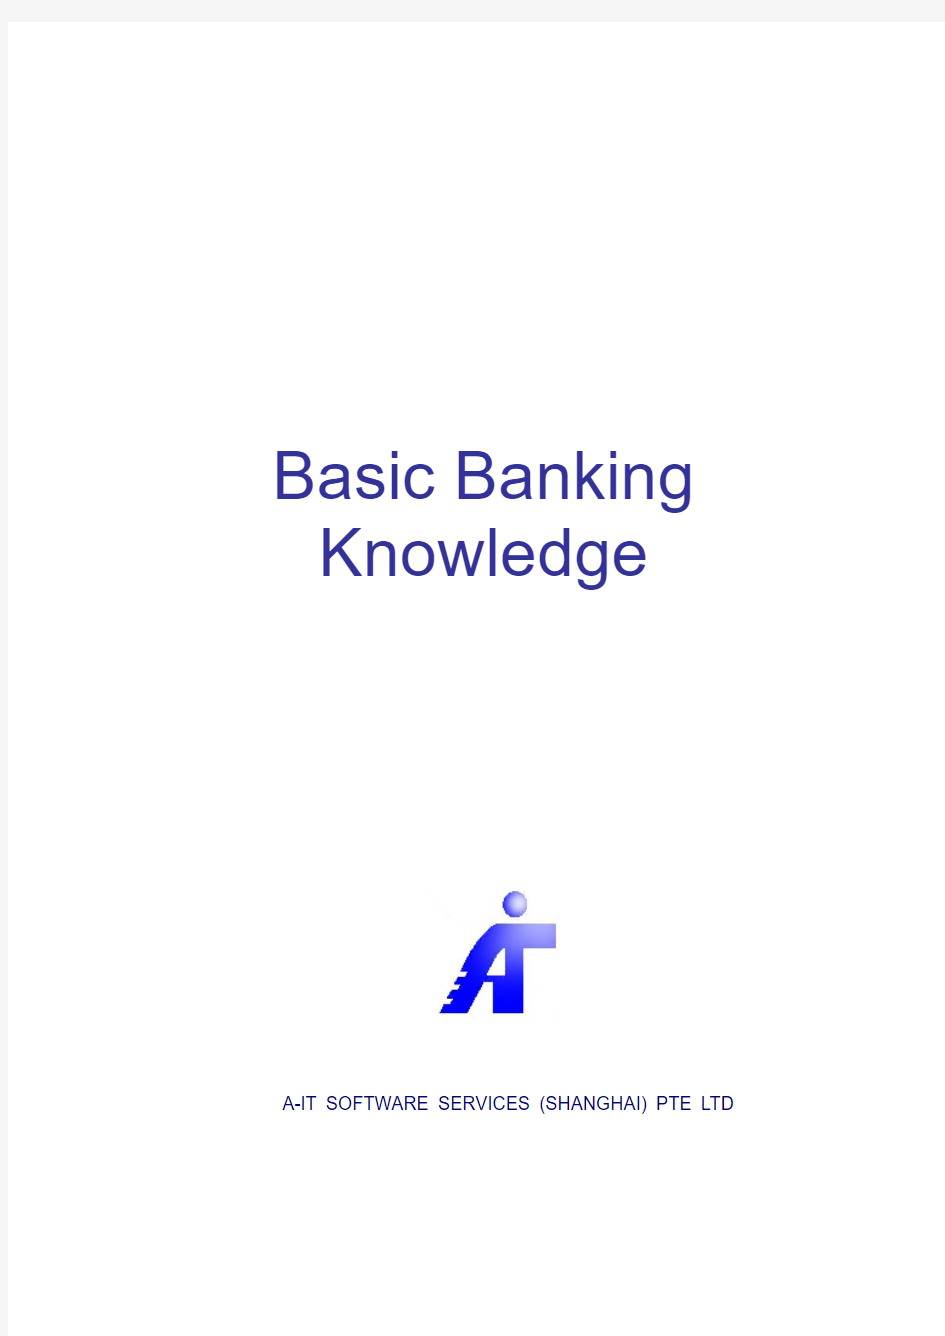 Basic Banking Knowledge